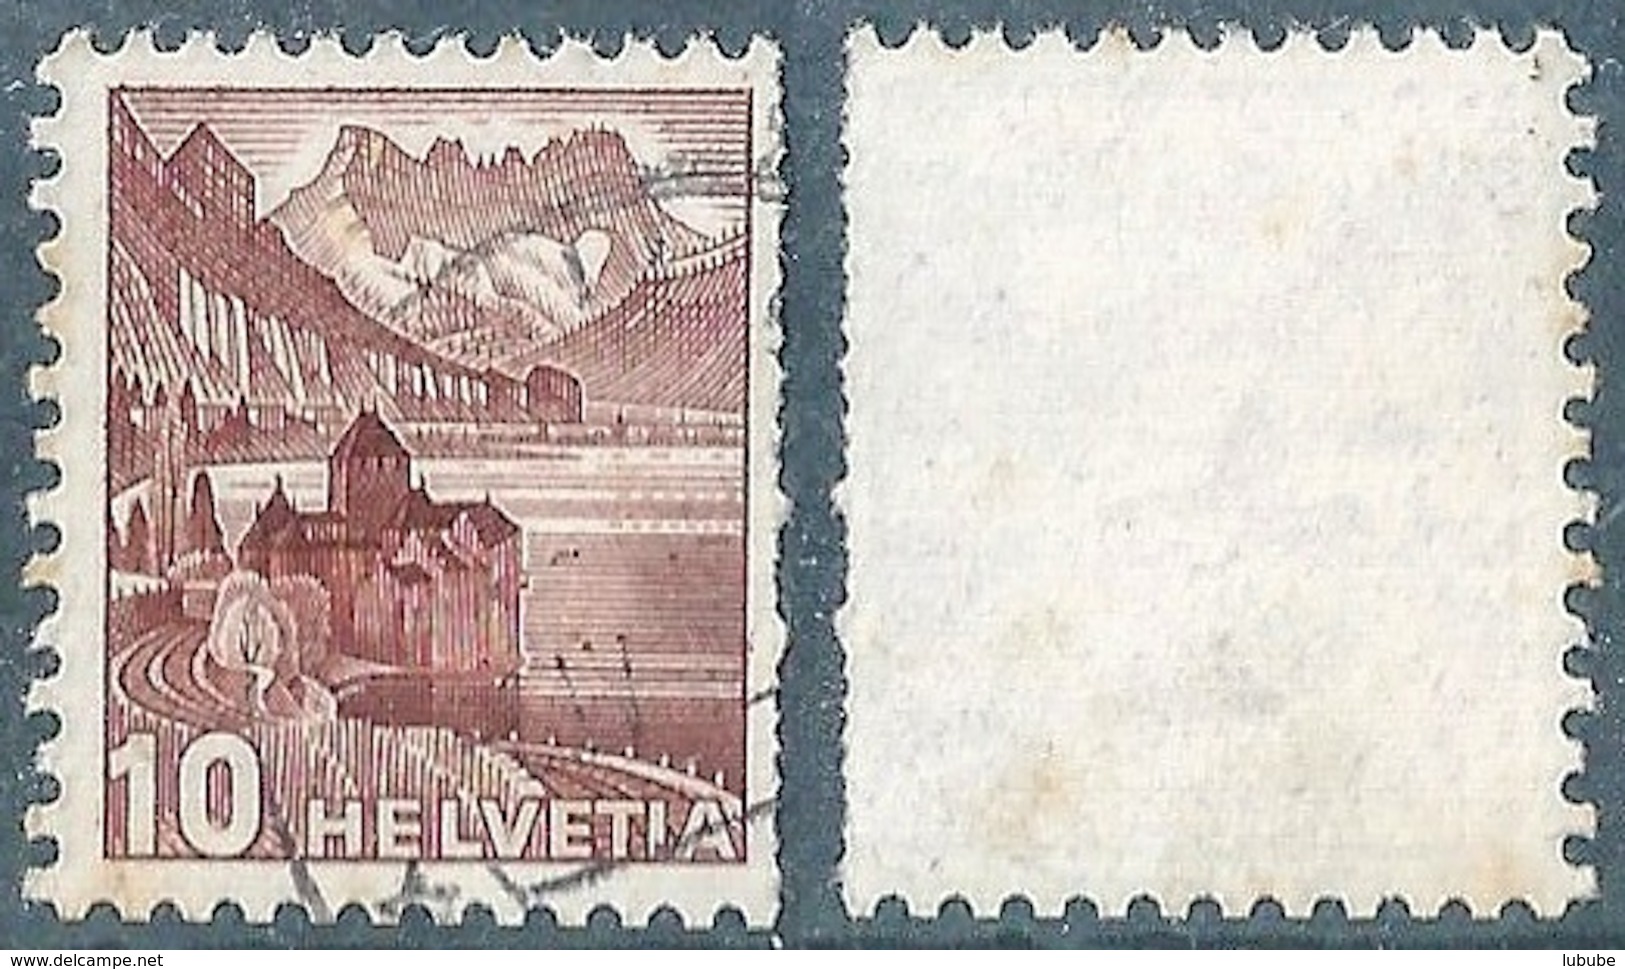 Schloss Chillon 242R, 10 Rp.dunkelbraun  (doppelte Zähnung)         1939 - Coil Stamps